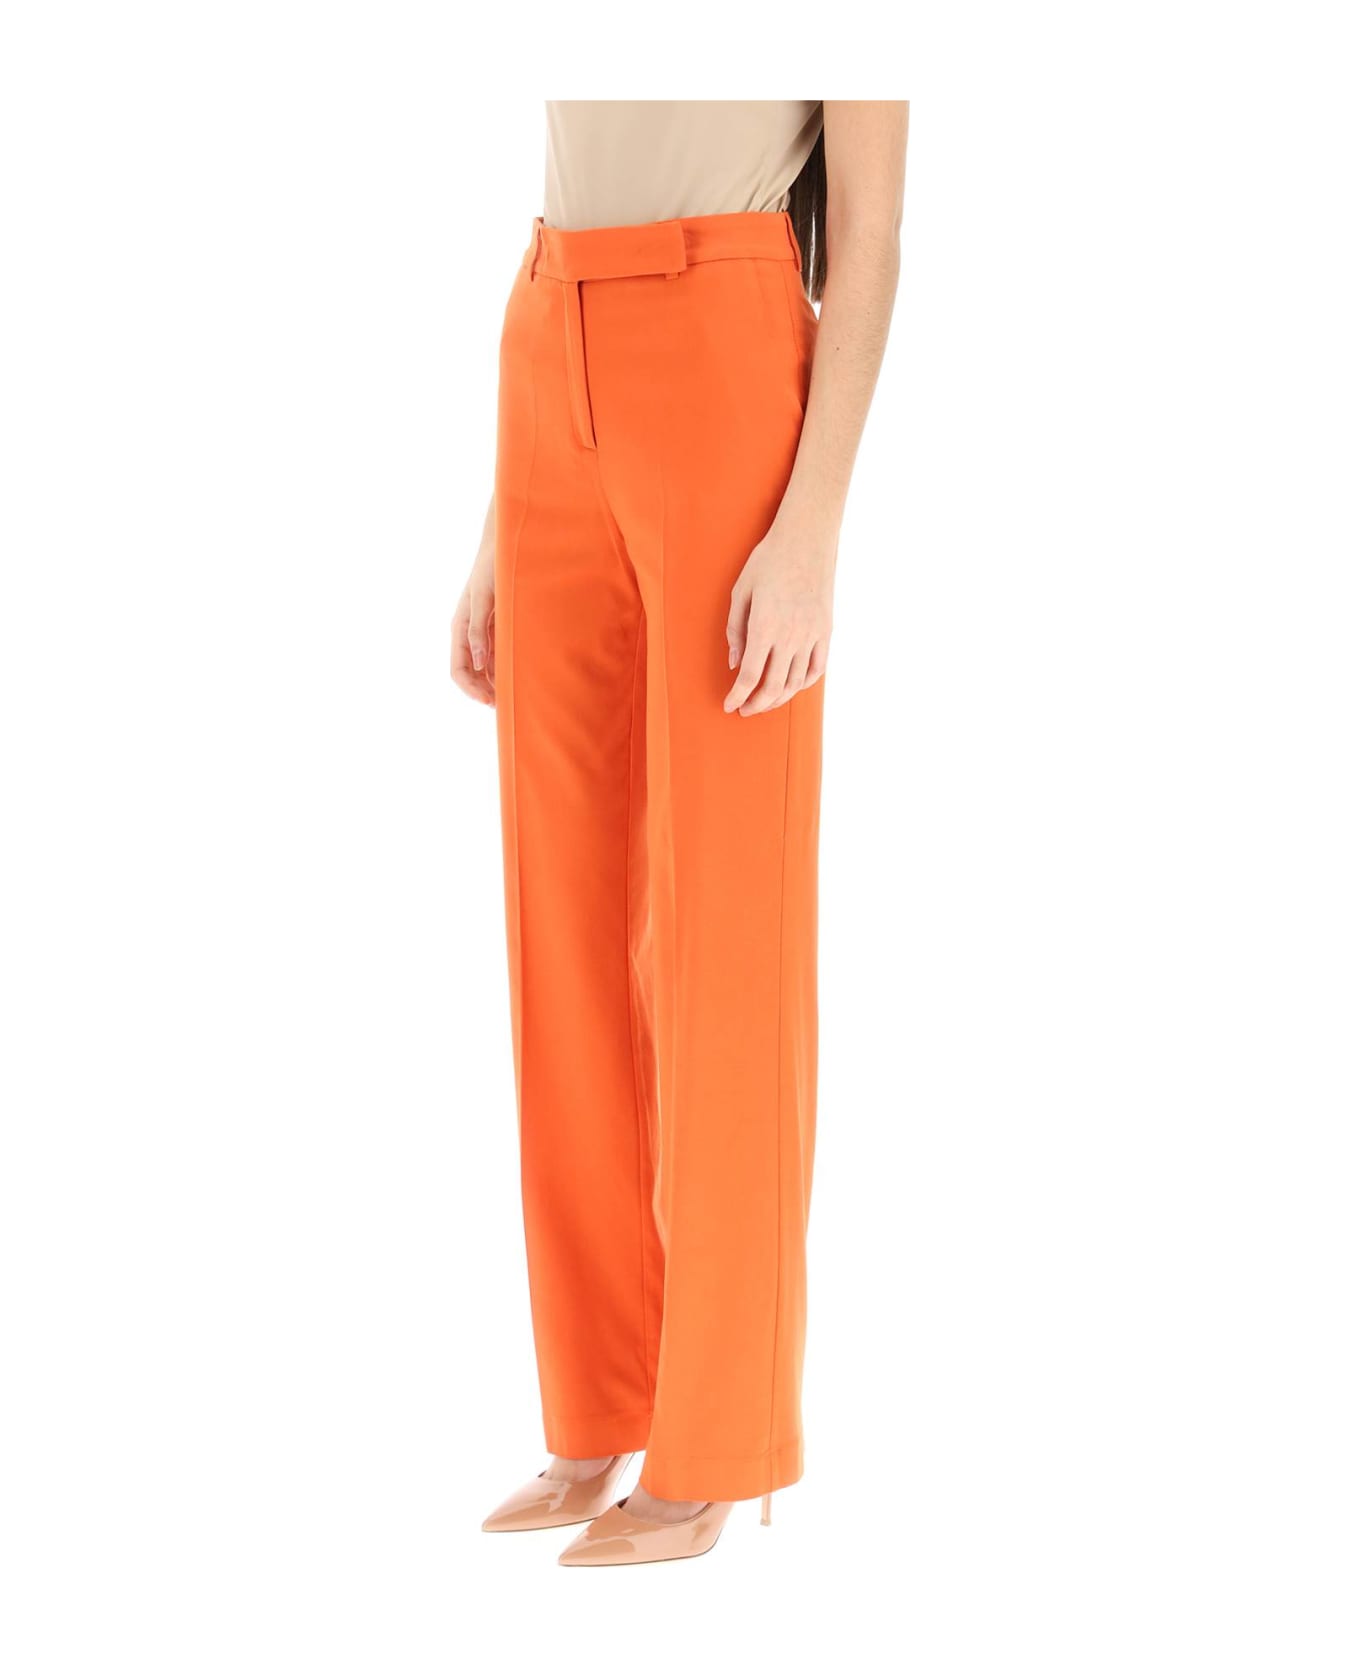 Hebe Studio 'lover' Canvas Trousers - ORANGE (Orange) ボトムス